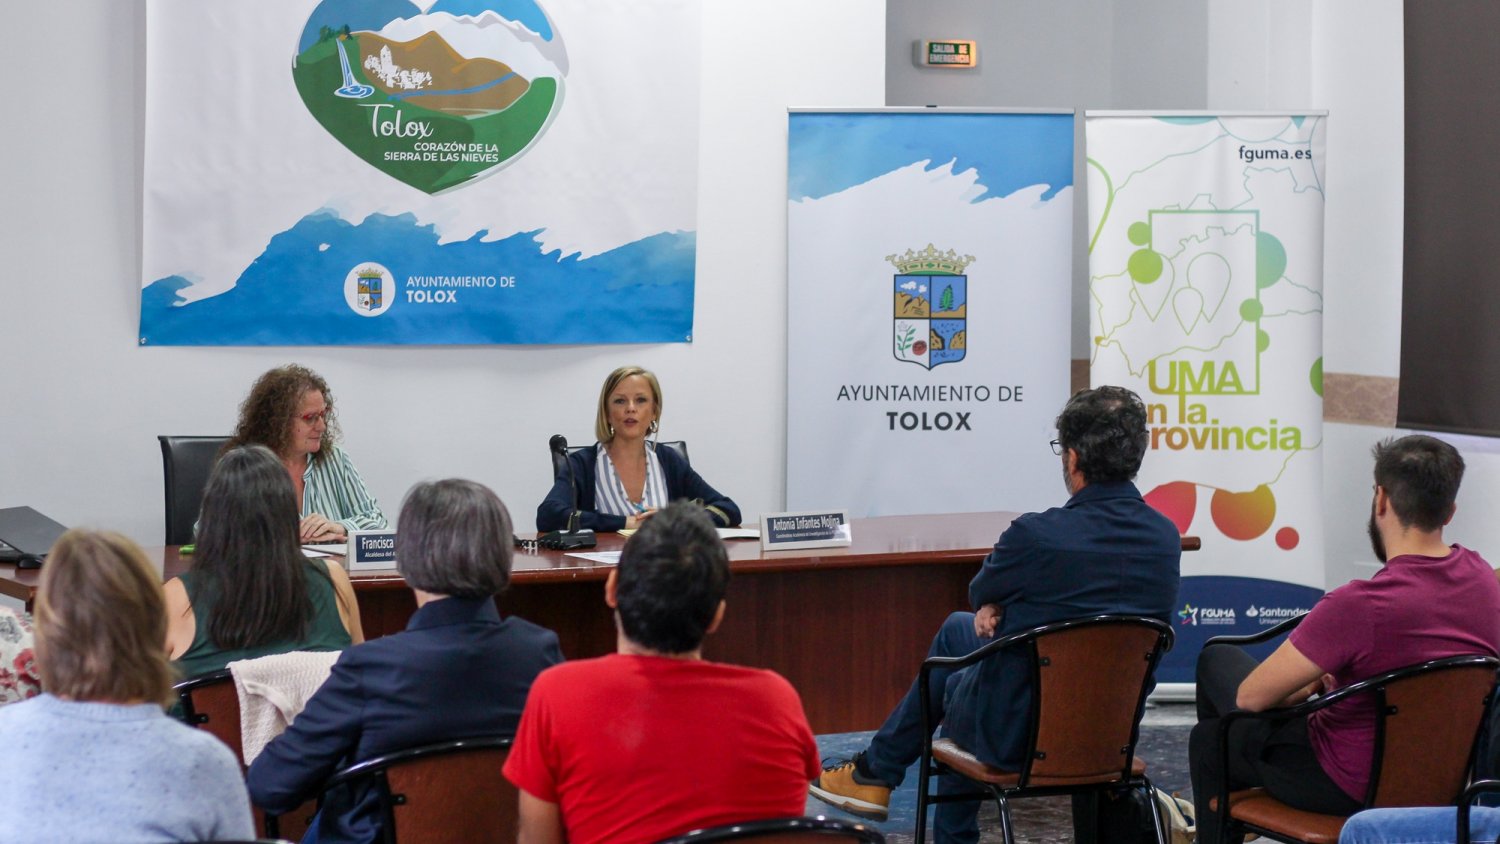 UMA.- Tolox se incorpora a la universidad en la provincia con unas jornadas sobre la Sierra de las Nieves